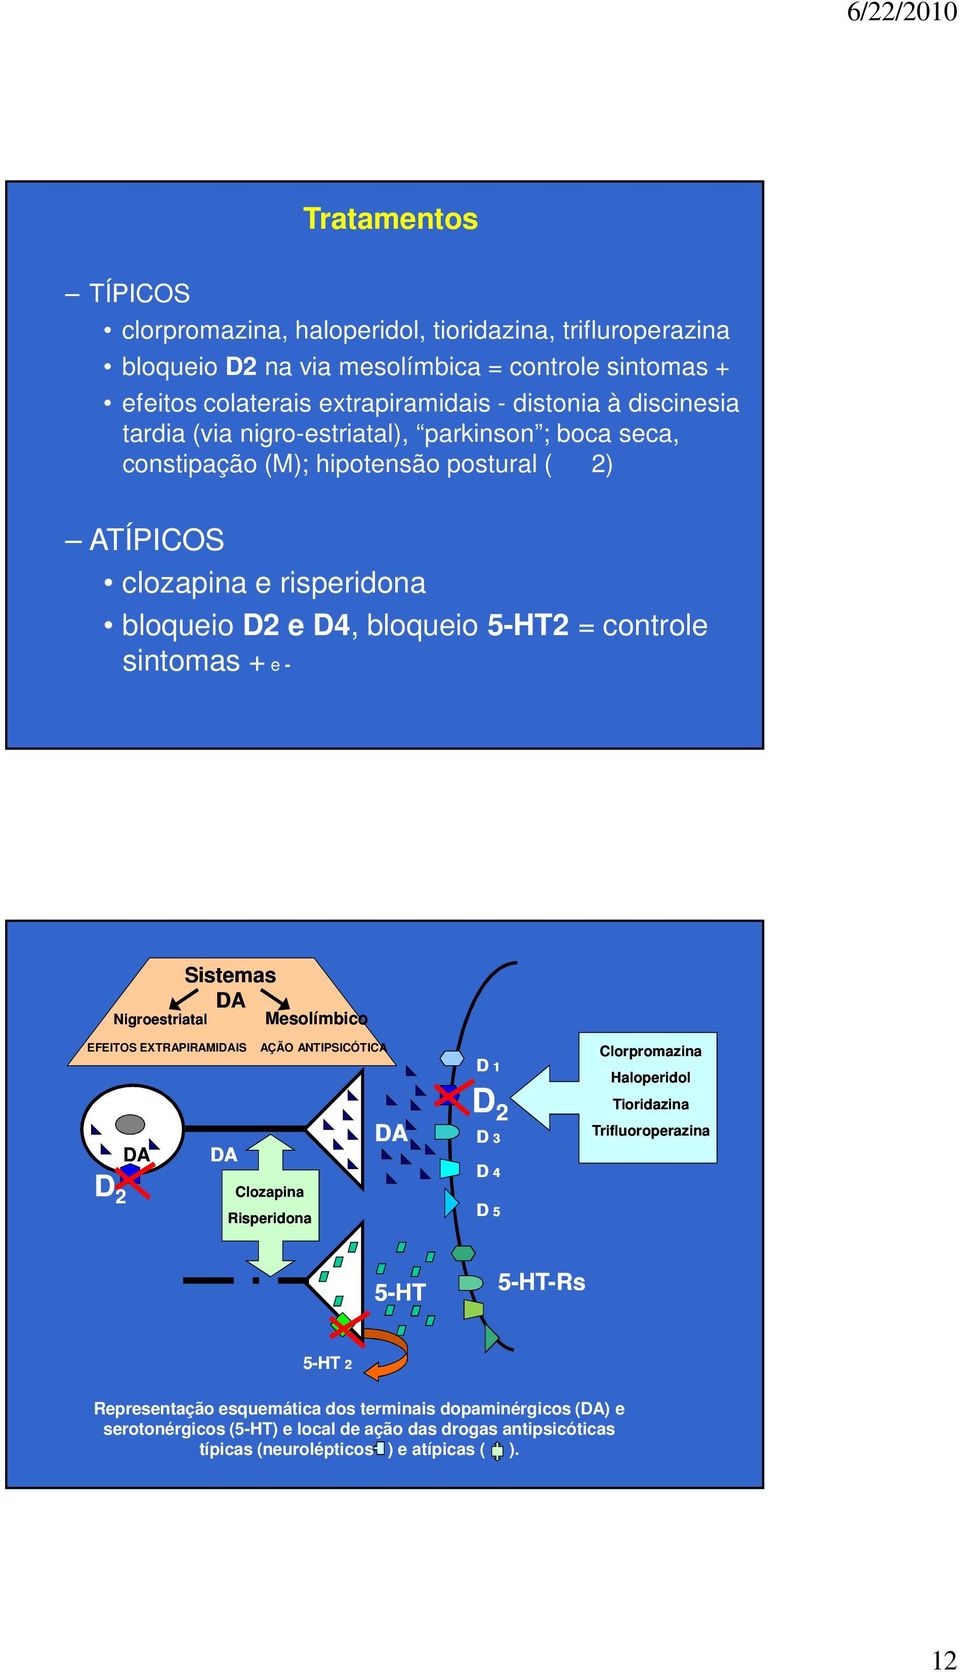 Nigroestriatal Sistemas DA Mesolímbico EFEITOS EXTRAPIRAMIDAIS D 2 DA DA AÇÃO ANTIPSICÓTICA Clozapina Risperidona DA D 1 D 2 D 3 D 4 D 5 Clorpromazina Haloperidol Tioridazina